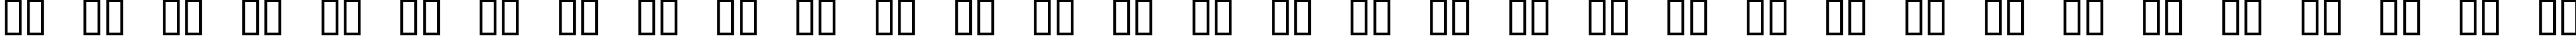 Пример написания русского алфавита шрифтом Digital Readout Expanded